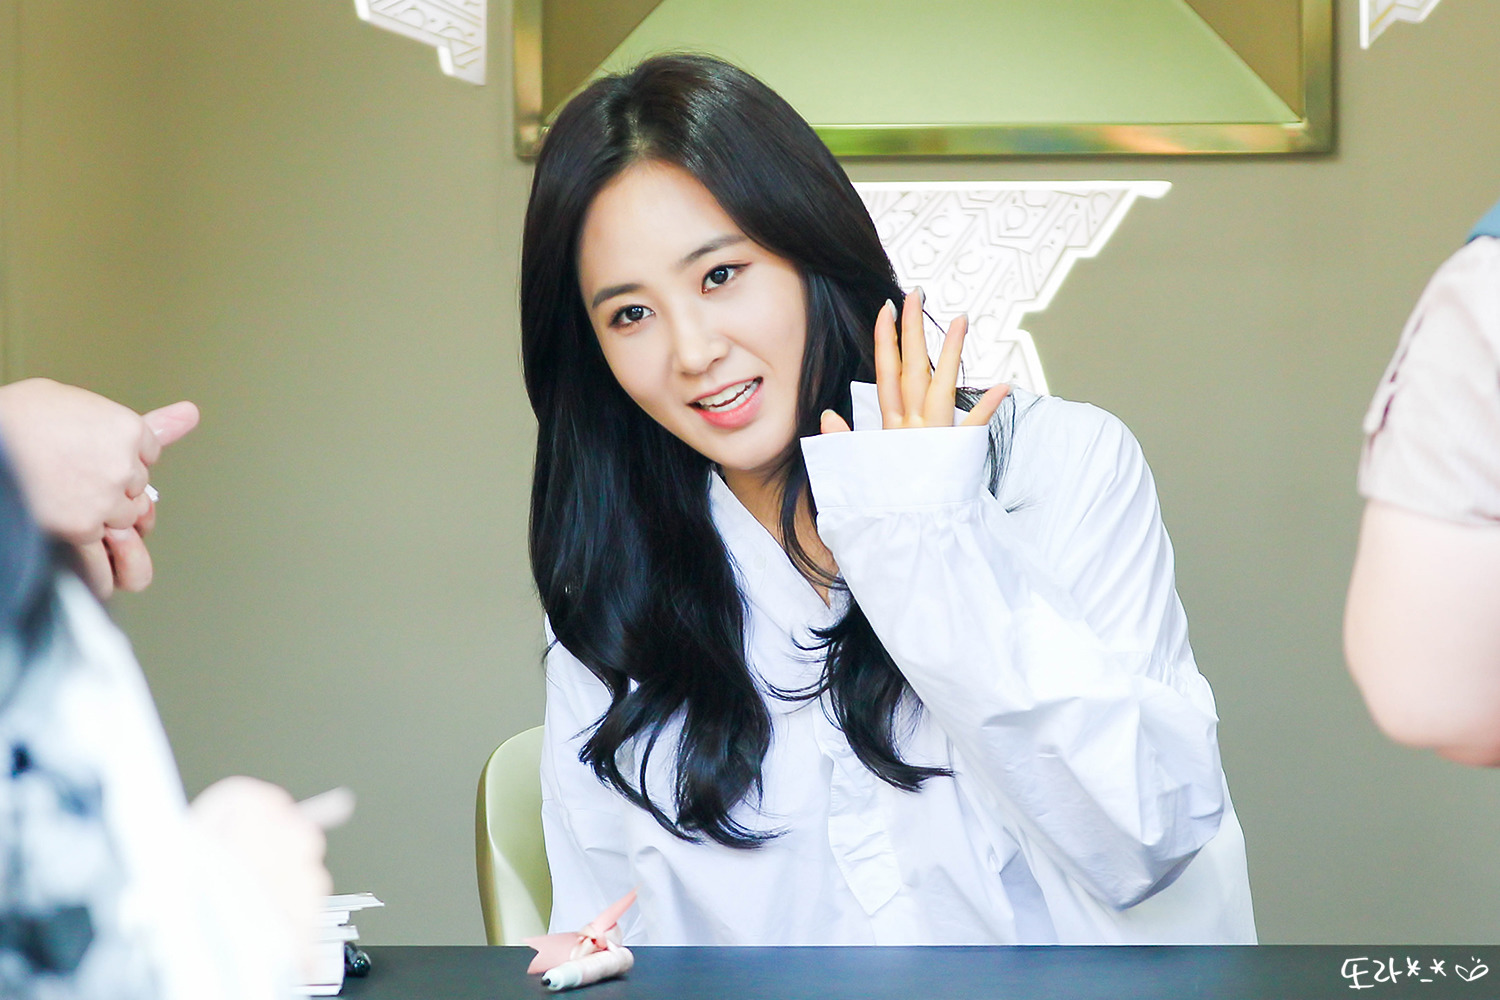 [PIC][09-10-2016]Yuri tham dự buổi Fansign thứ 2 cho thương hiệu nước hoa "BVLGARI Rose Goldea" tại Myeongdong Lotte Duty Free vào chiều nay - Page 4 252631485957A4CB21BF95